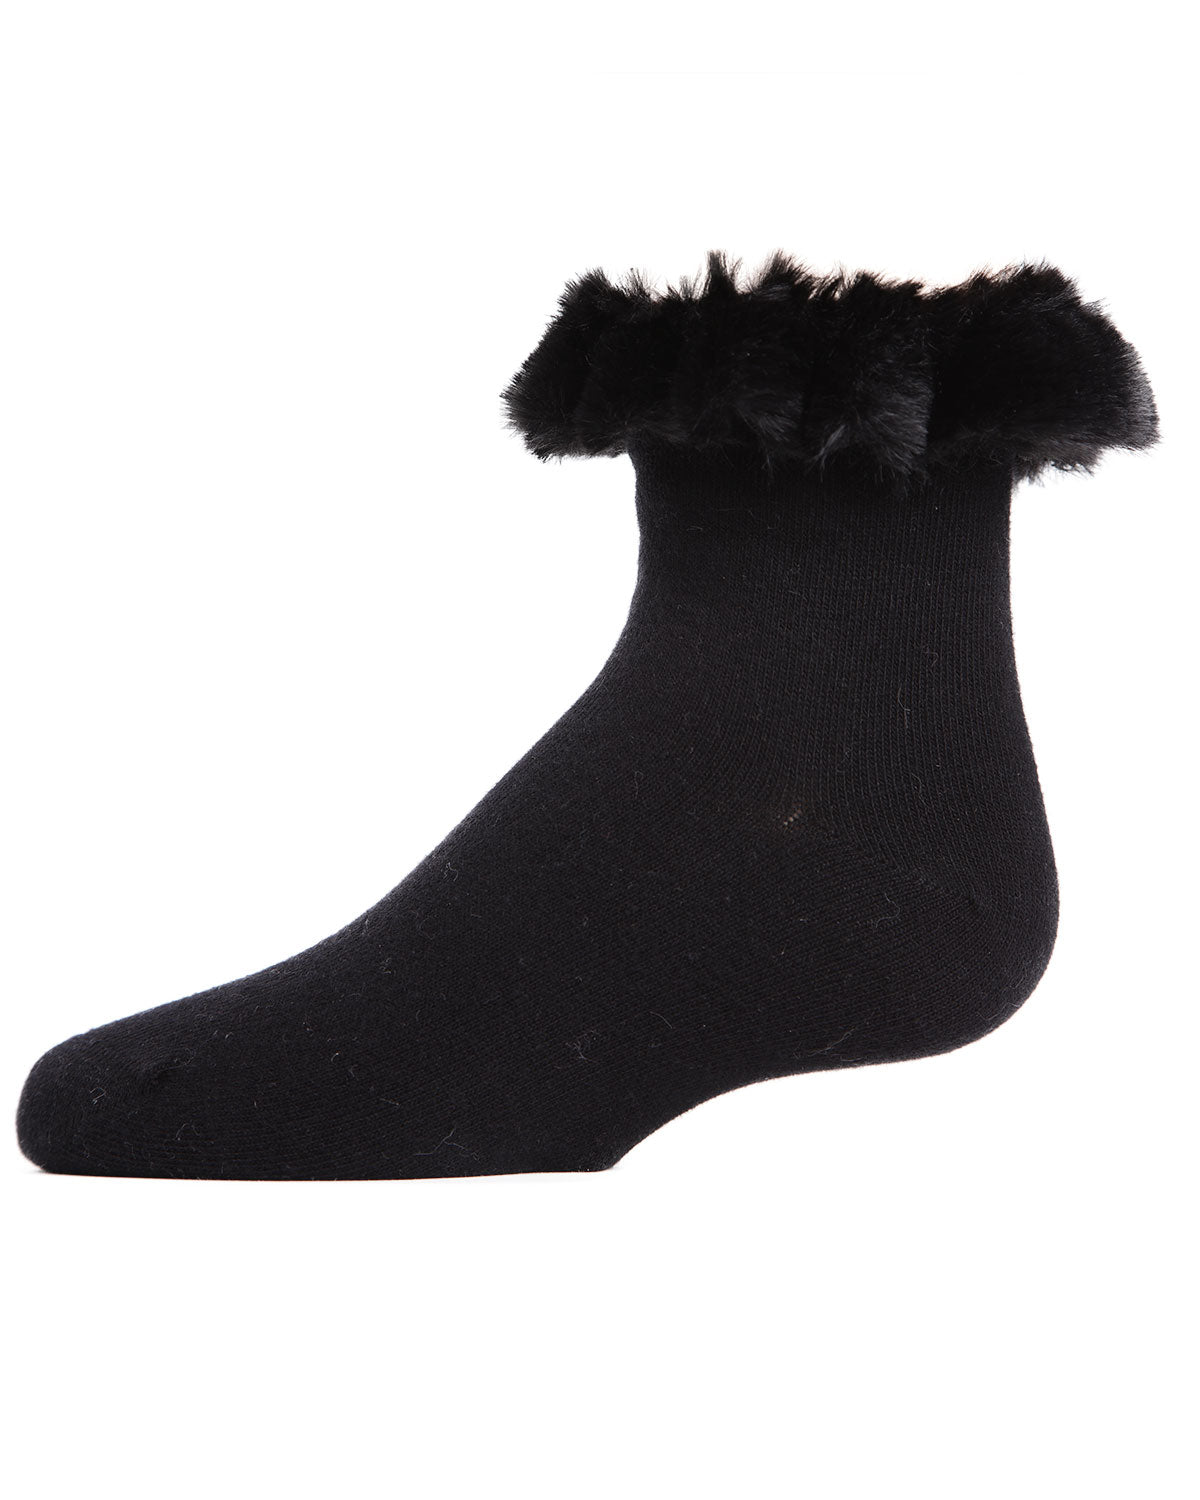 Faux-Fur Cuff Cotton Blend Anklet Socks